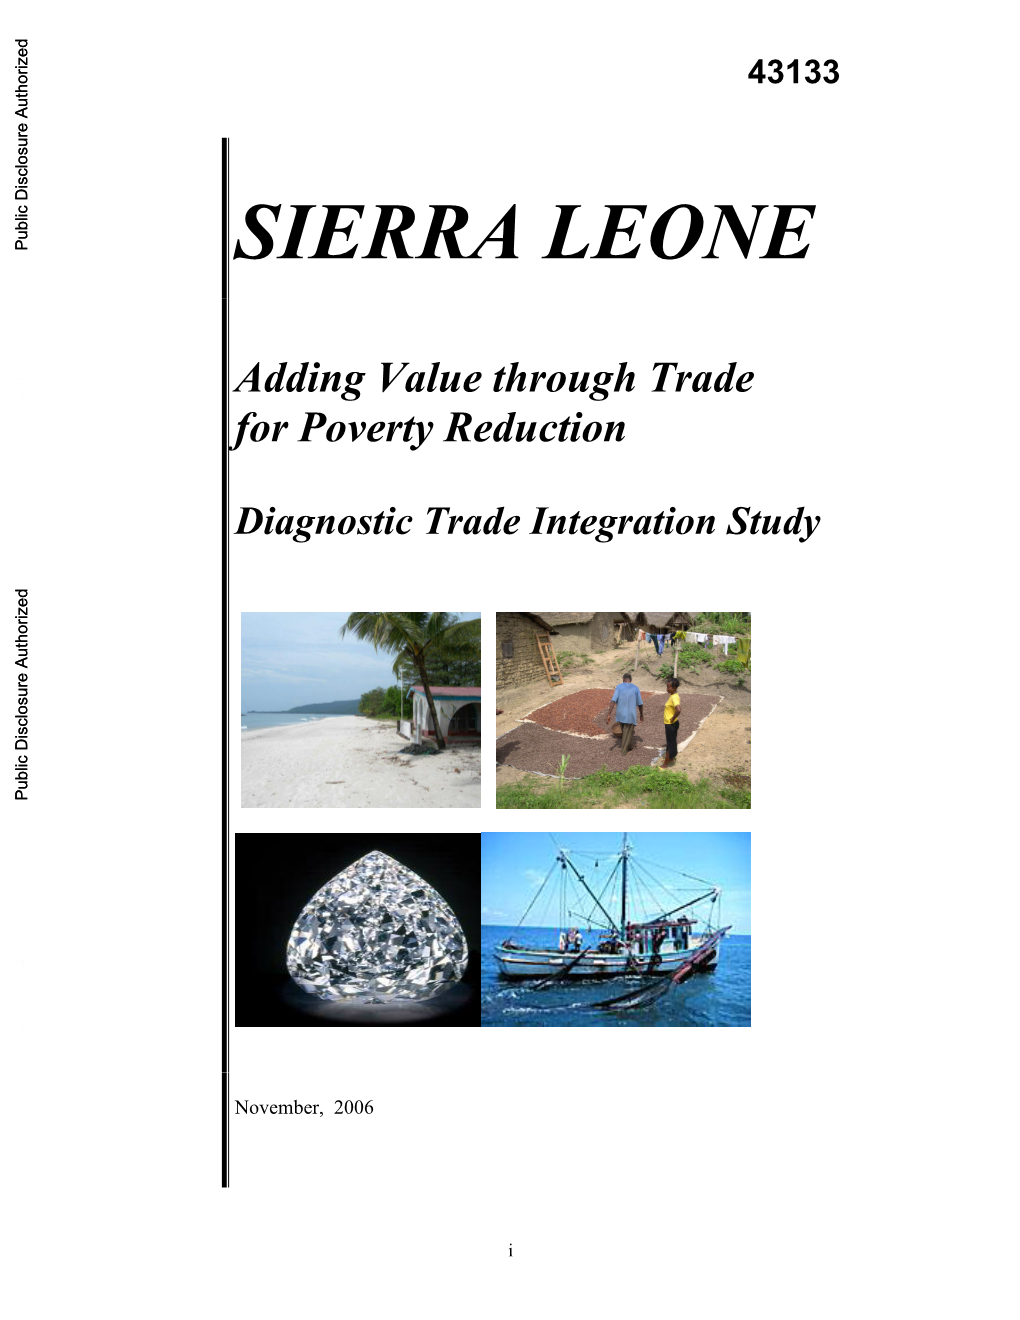 Trade & Poverty in Sierra Leone